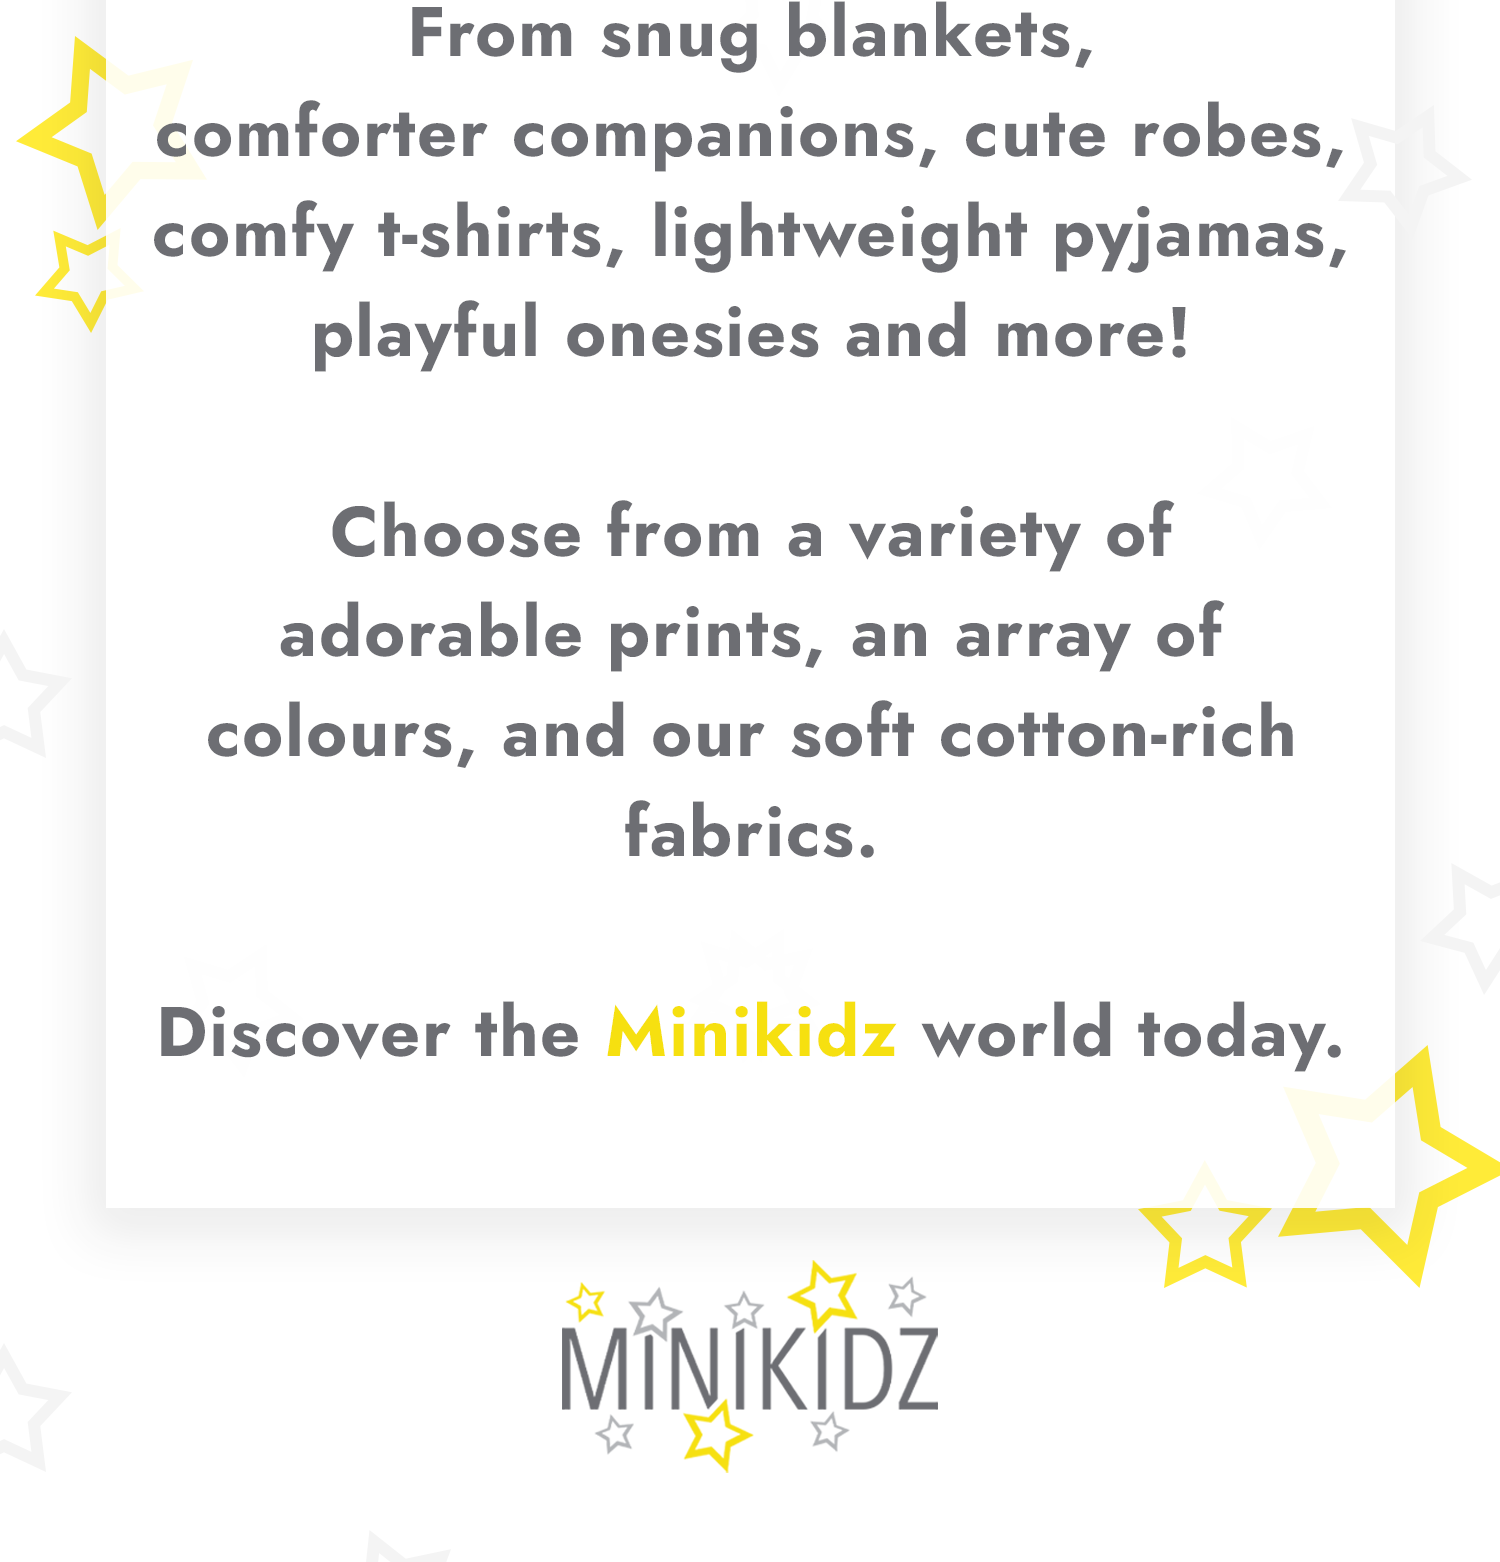 about us page minikidz.co.uk